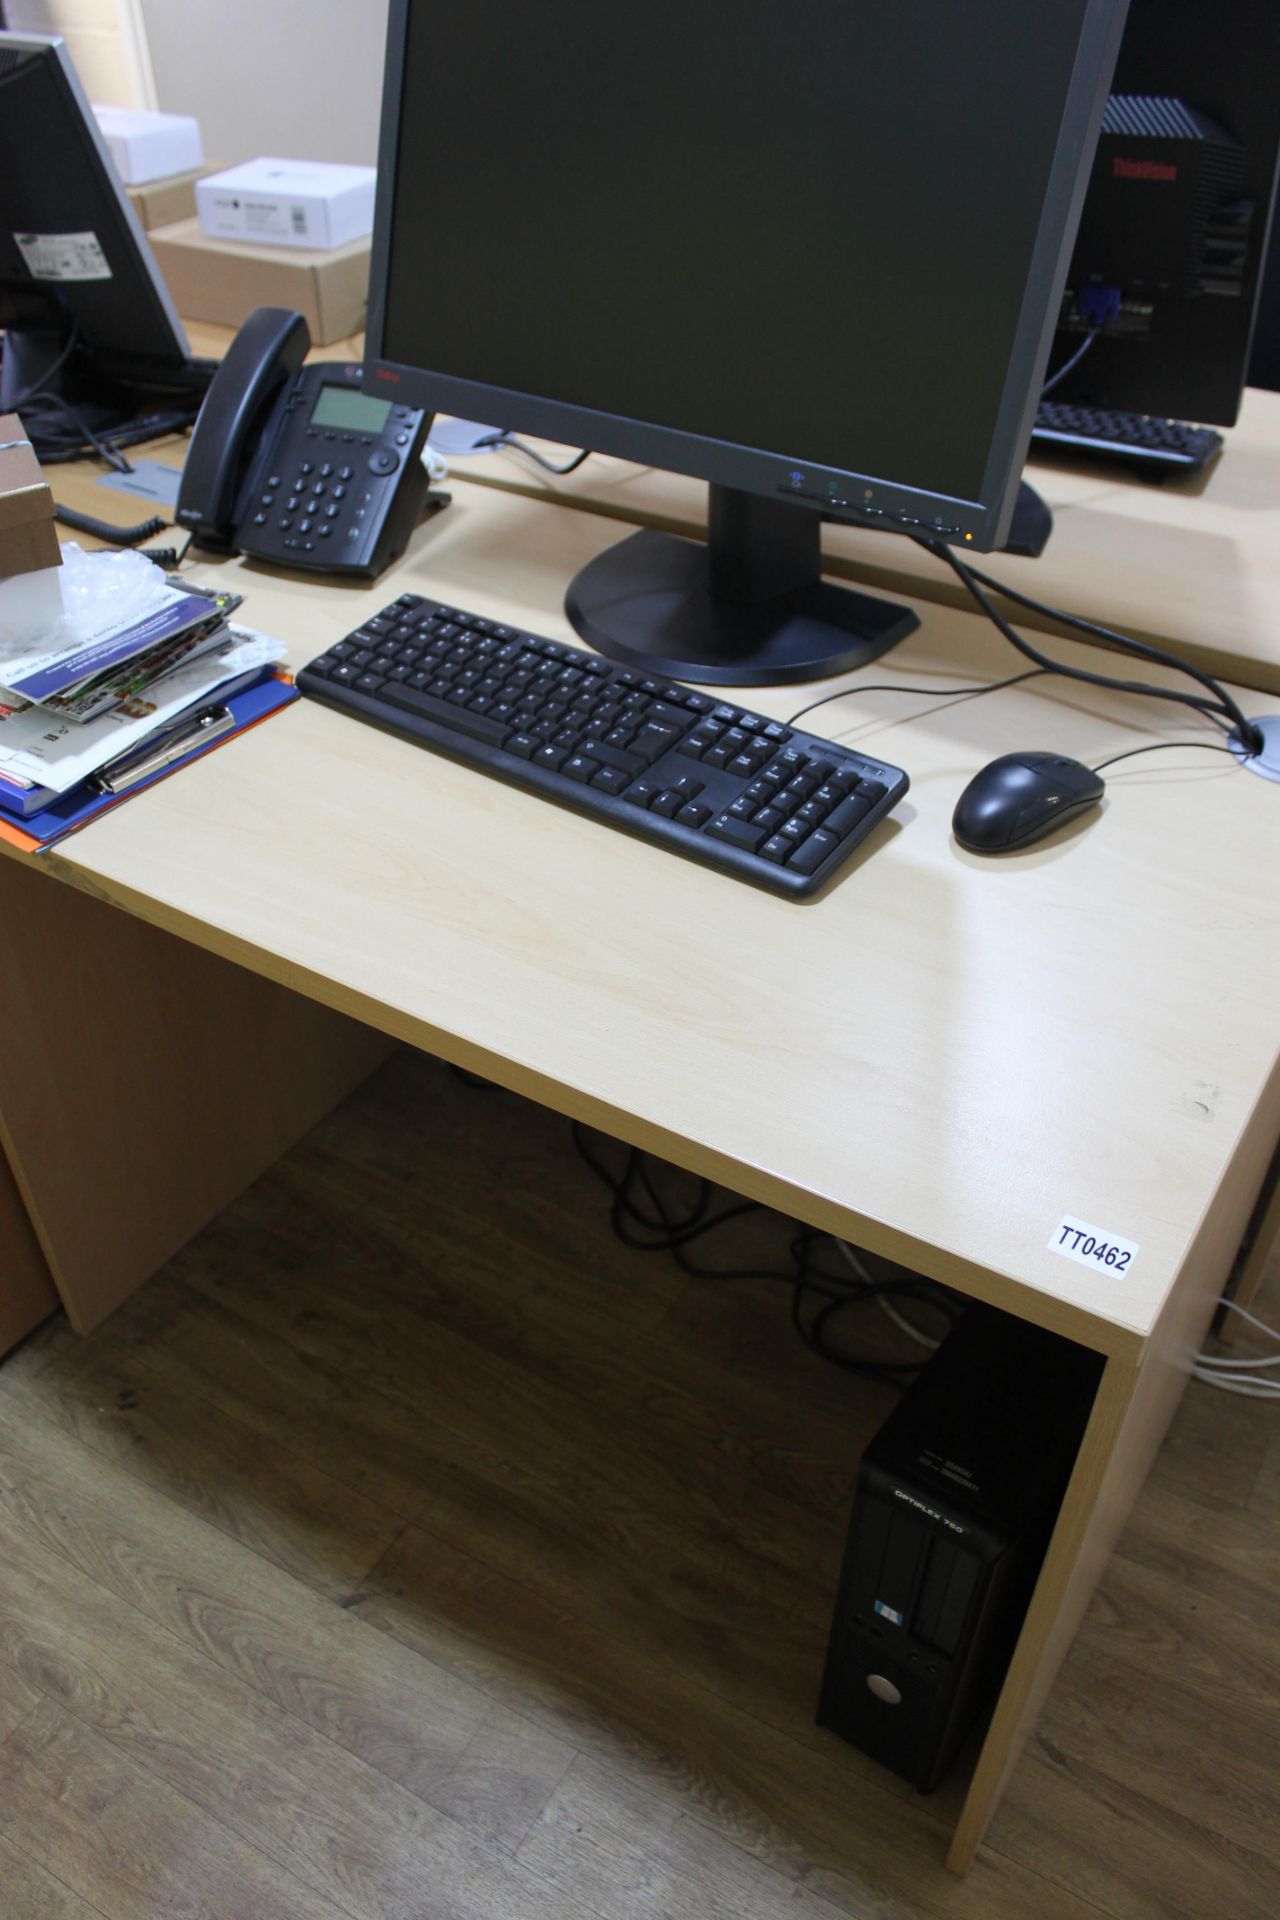 Small Office / Call Centre Desk – W100cmxD60cmxH75cm - Image 2 of 2